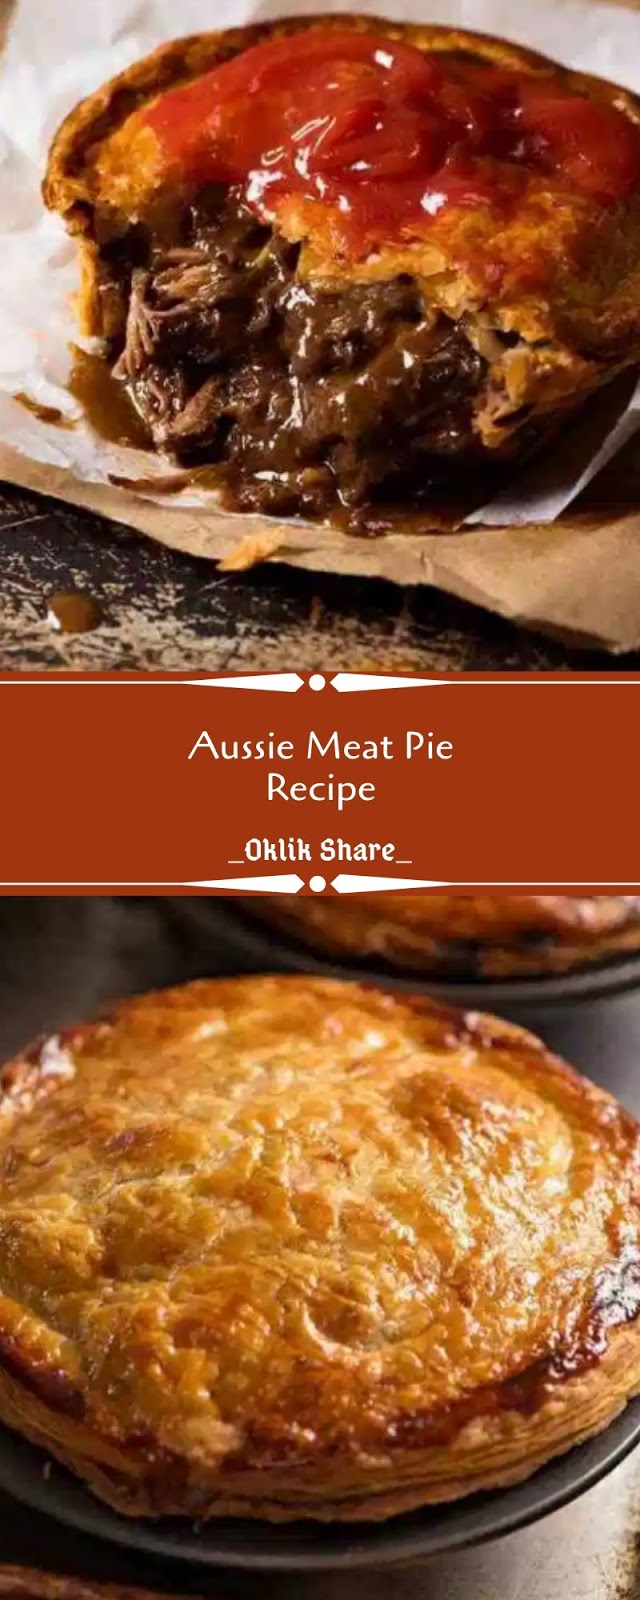 Aussie Meat Pie Recipe